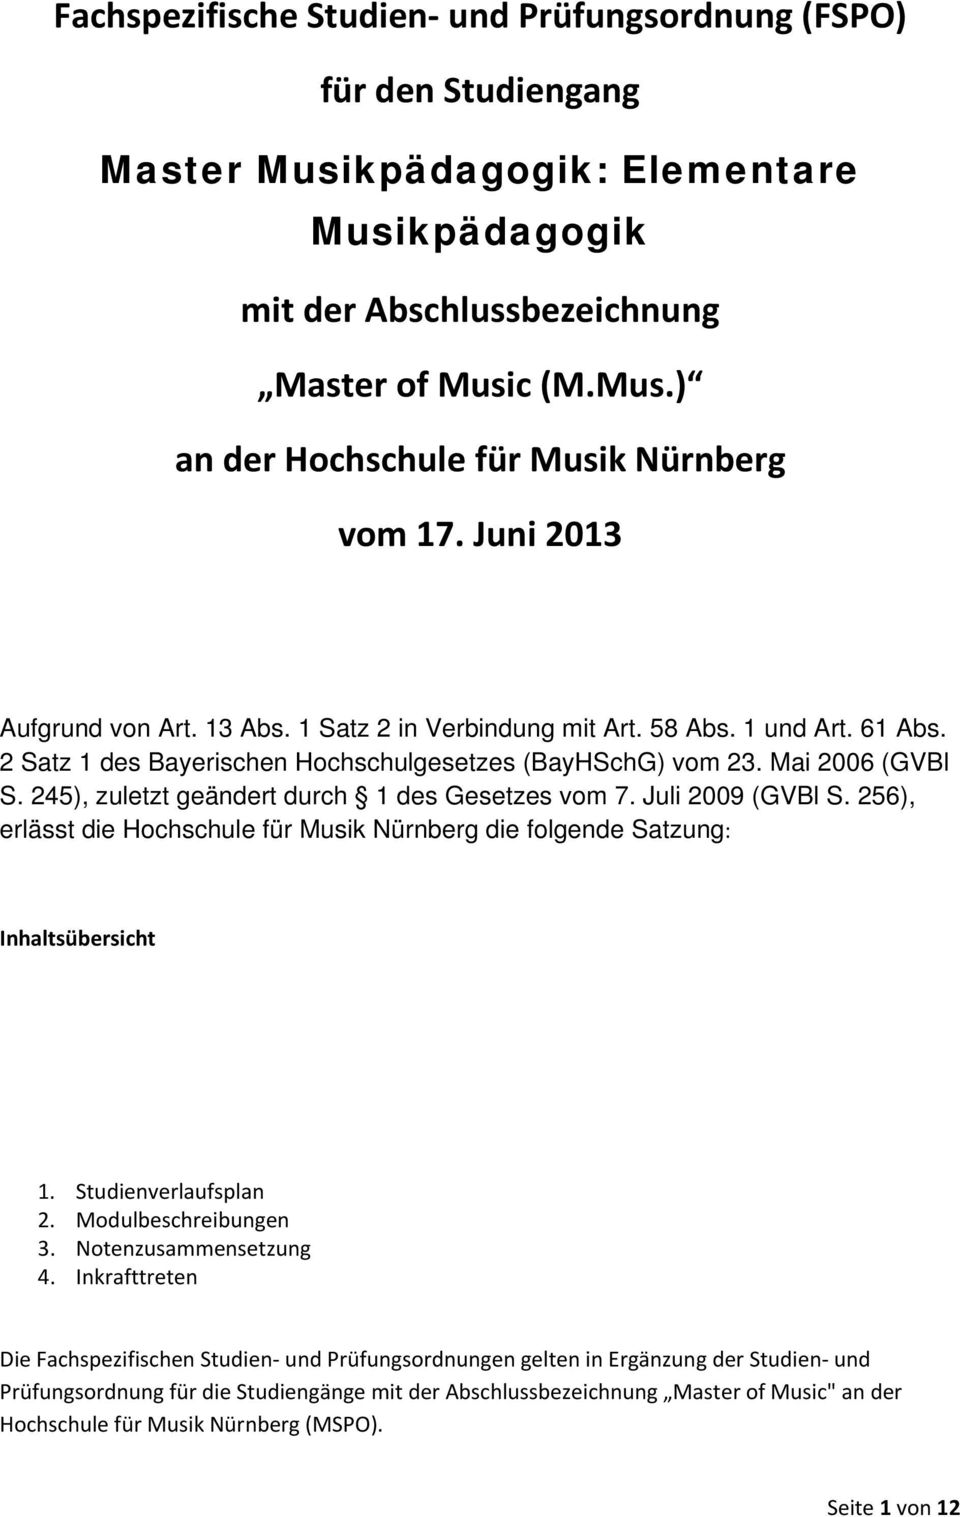 245), zuletzt geändert durch 1 des Gesetzes vom 7. Juli 2009 (GVBl S. 256), erlässt die Hochschule für Musik Nürnberg die folgende Satzung: Inhaltsübersicht 1. Studienverlaufsplan 2.